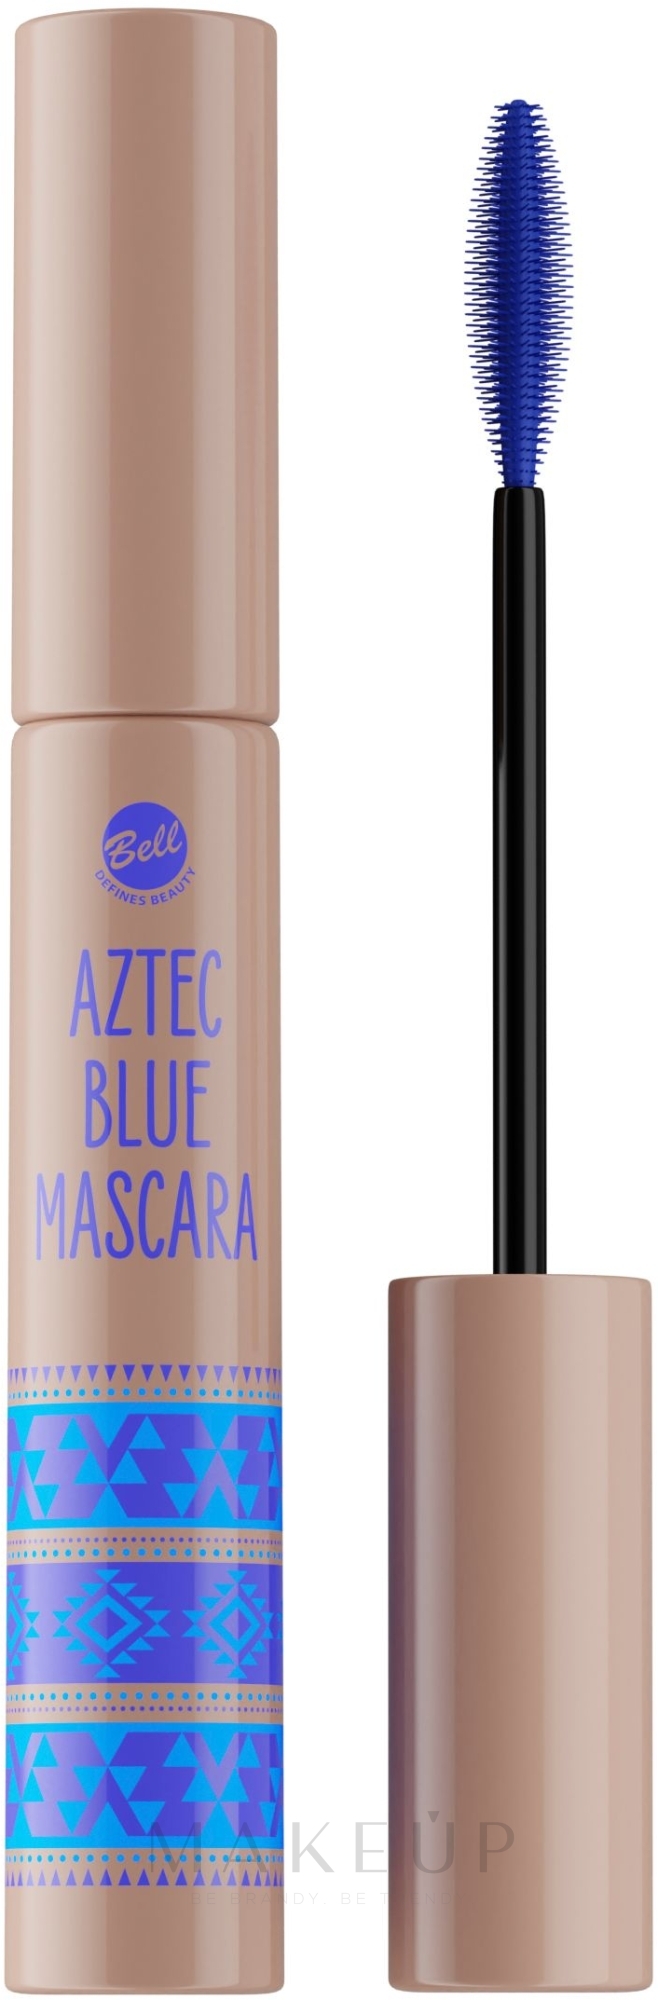 Mascara - Bell Aztec Queen Blue Mascara — Bild Blue